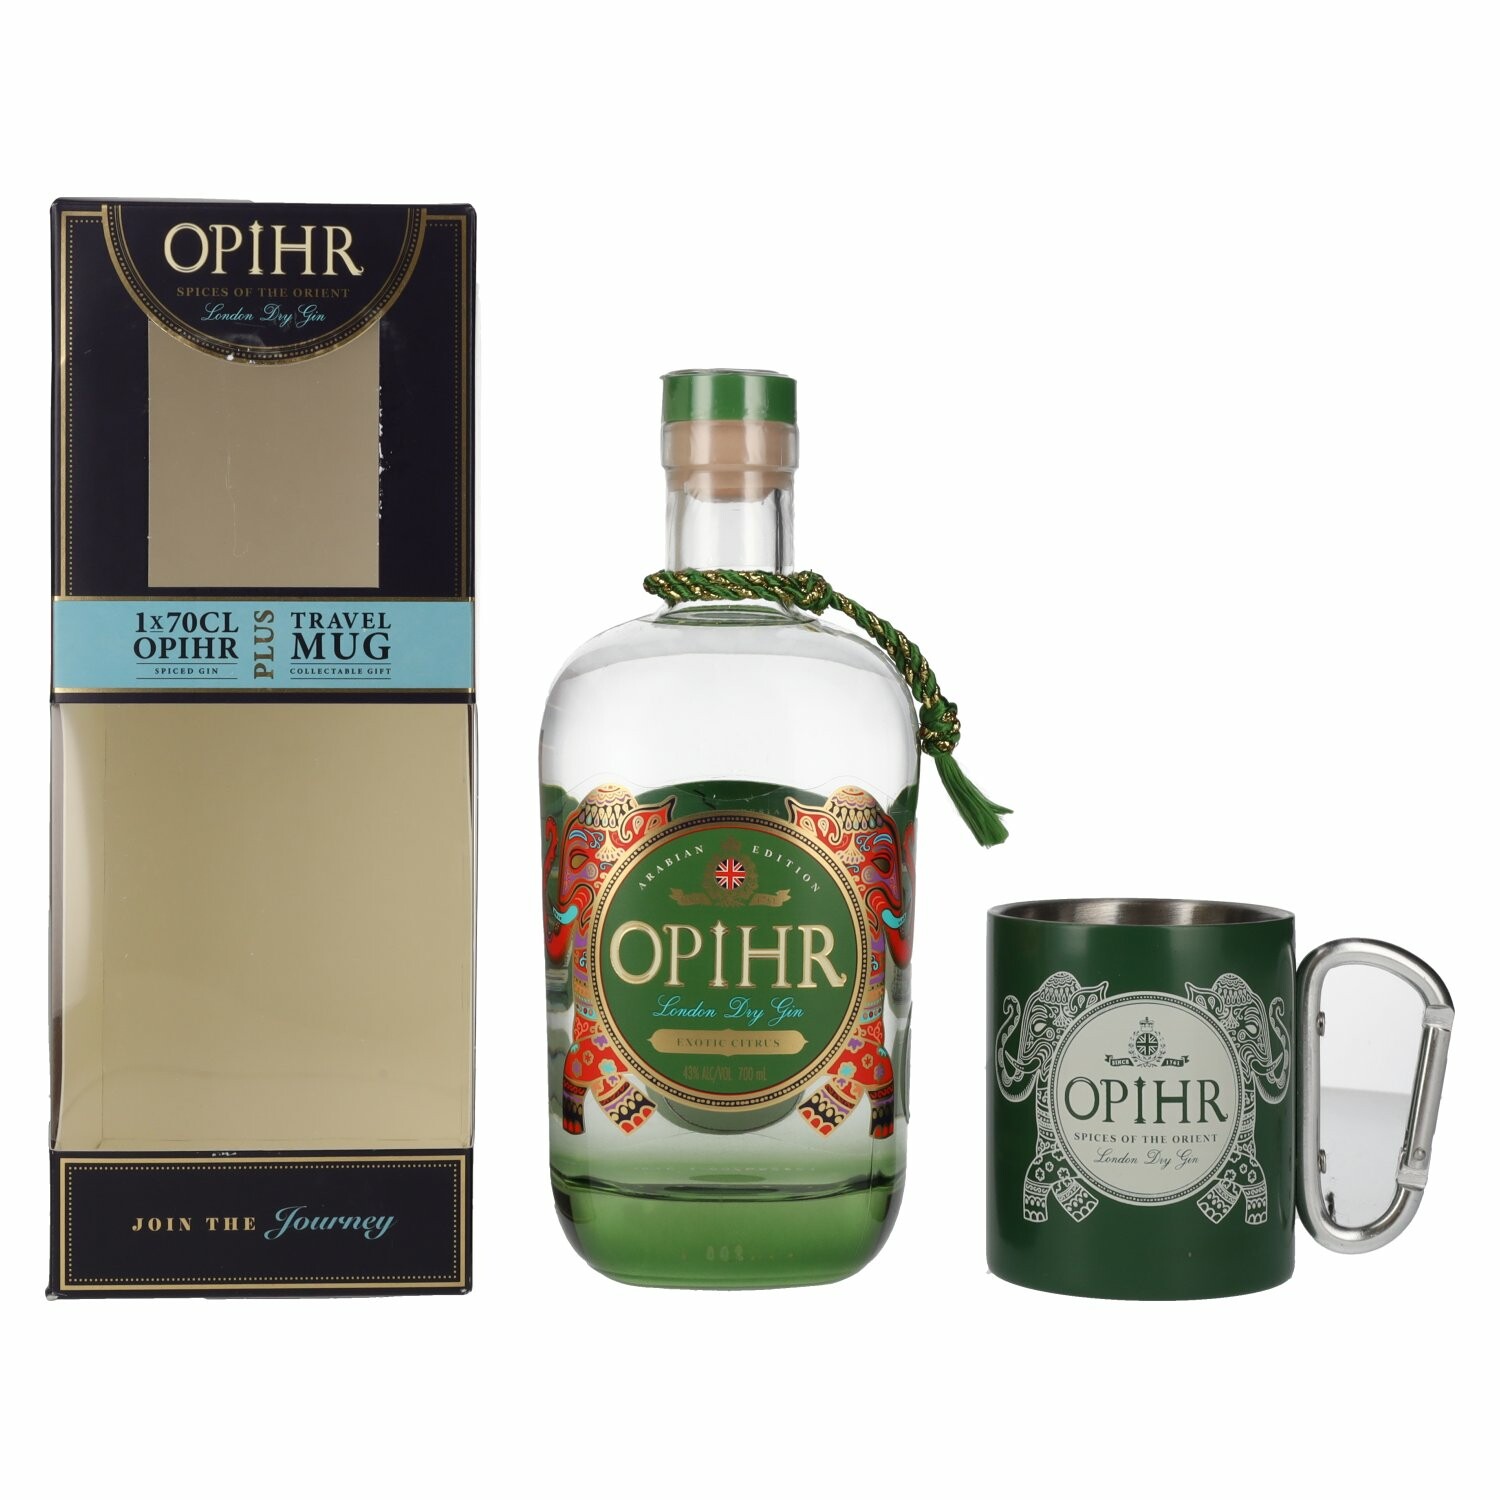 Opihr London Dry Gin ARABIAN EDITION 43% Vol. 0,7l in Giftbox with Travel Mug